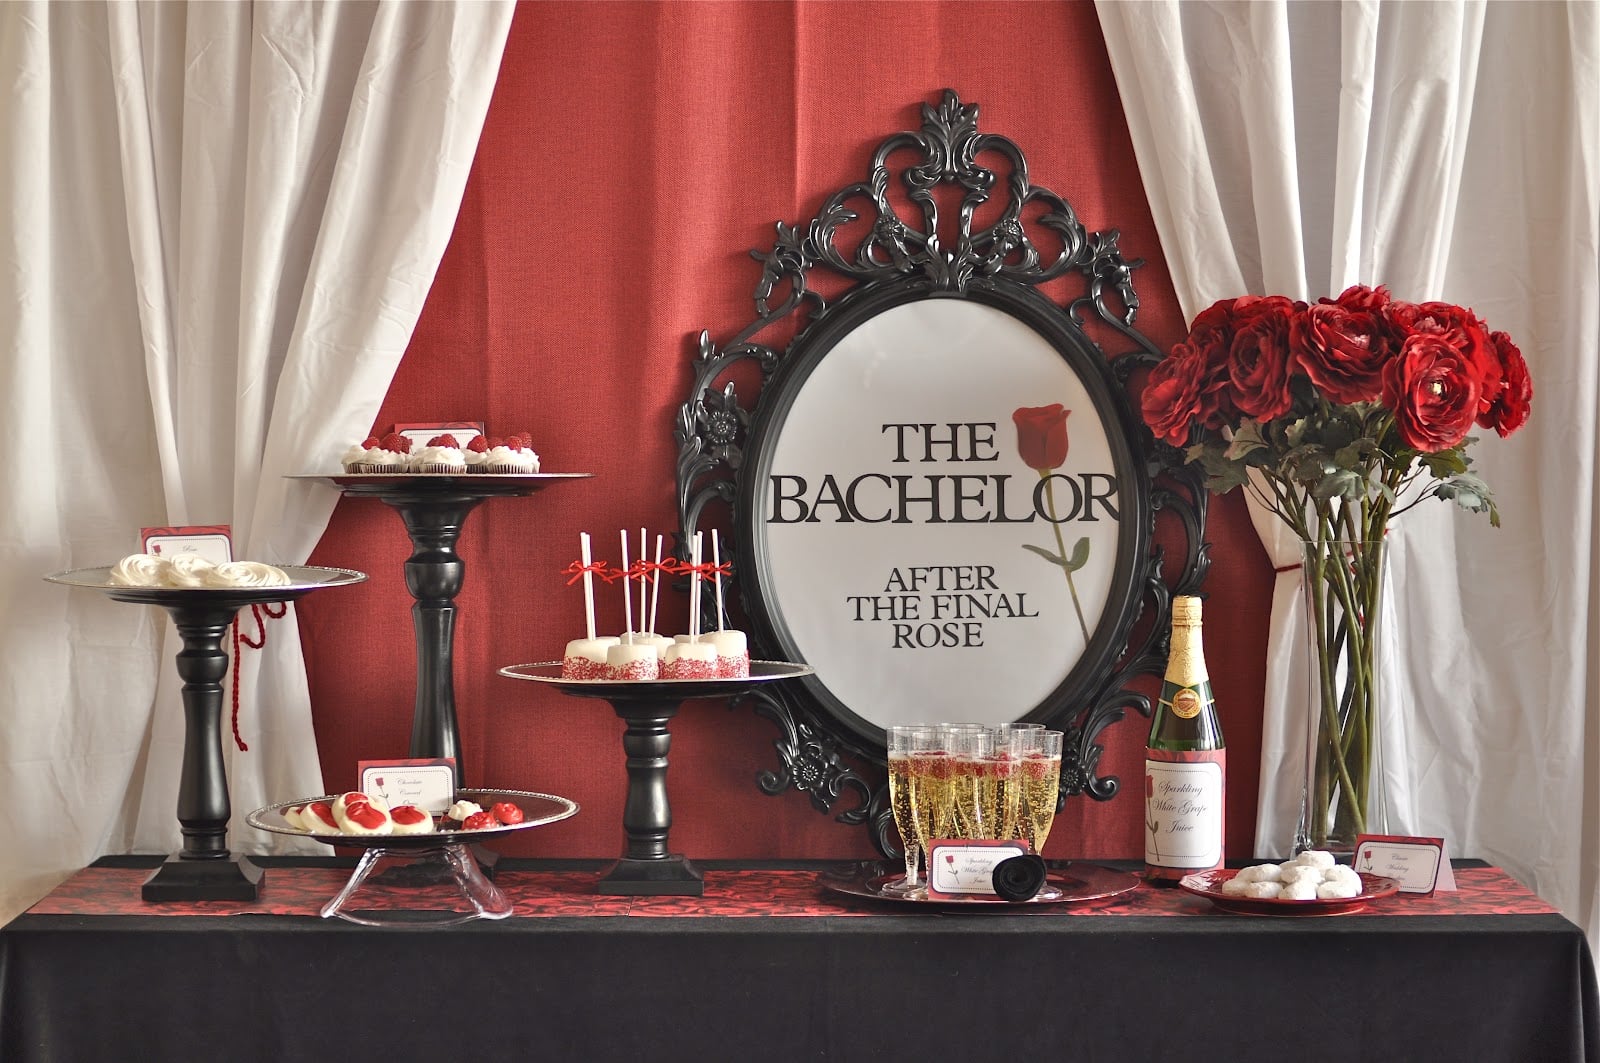 2014 Bachelorette Party Sex - The Bachelorette Party Ideas | POPSUGAR Love & Sex